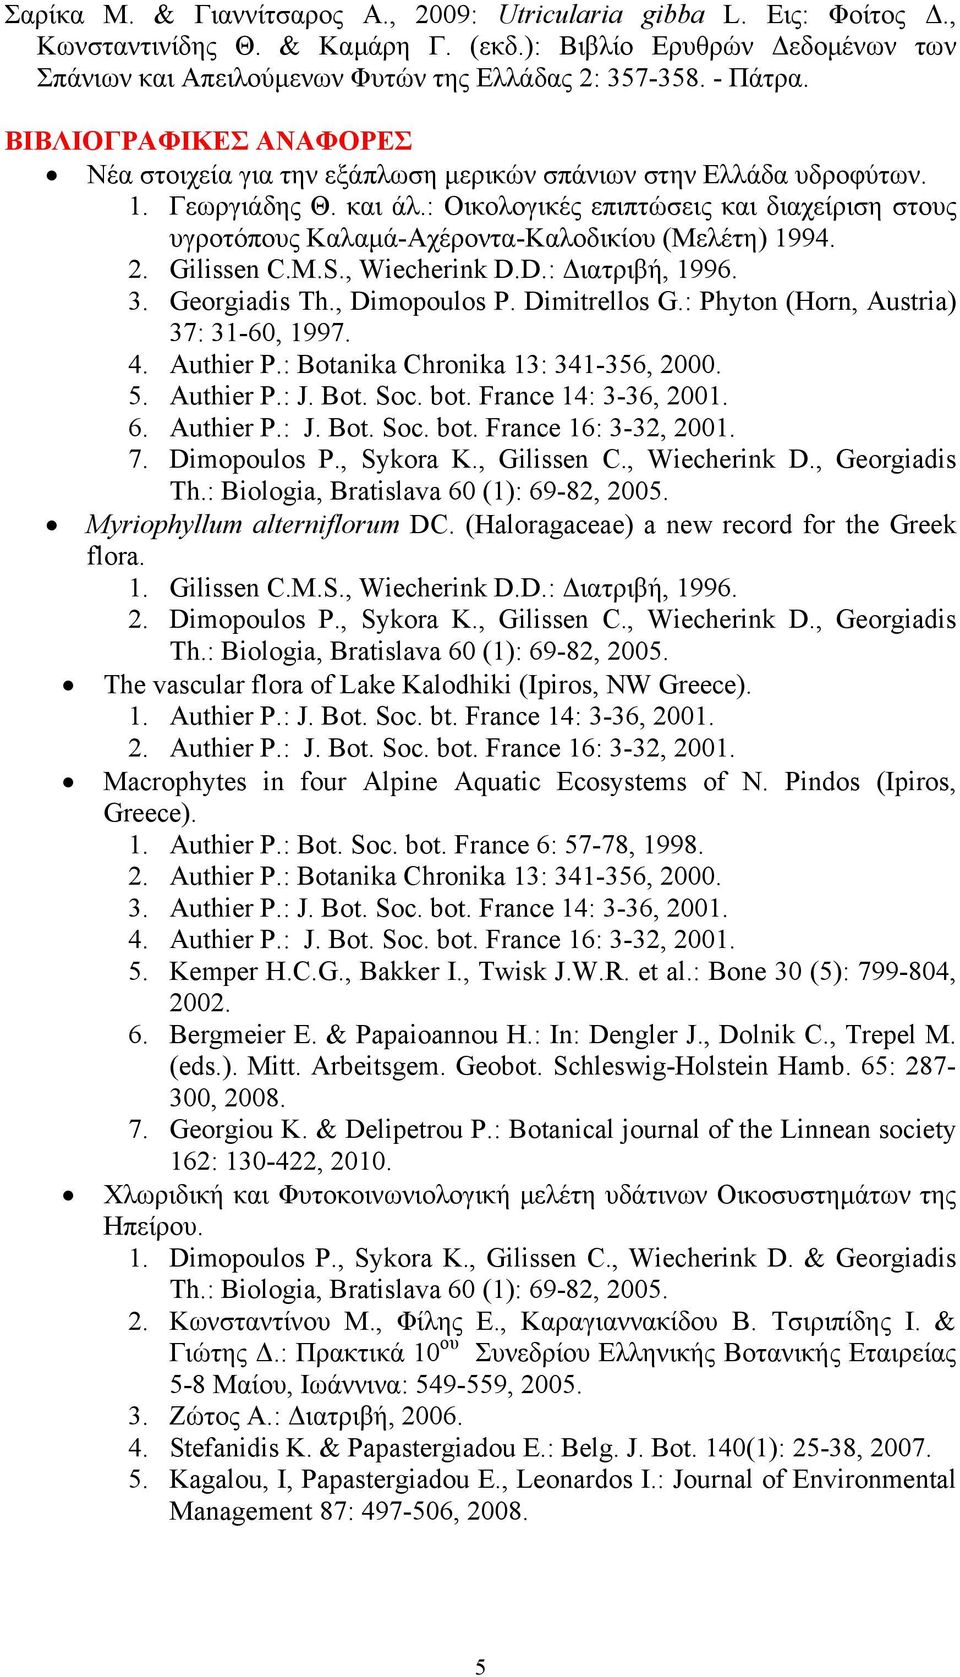 : Οικολογικές επιπτώσεις και διαχείριση στους υγροτόπους Καλαμά-Αχέροντα-Καλοδικίου (Μελέτη) 1994. 2. Gilissen C.M.S., Wiecherink D.D.: Διατριβή, 1996. 3. Georgiadis Th., Dimopoulos P. Dimitrellos G.